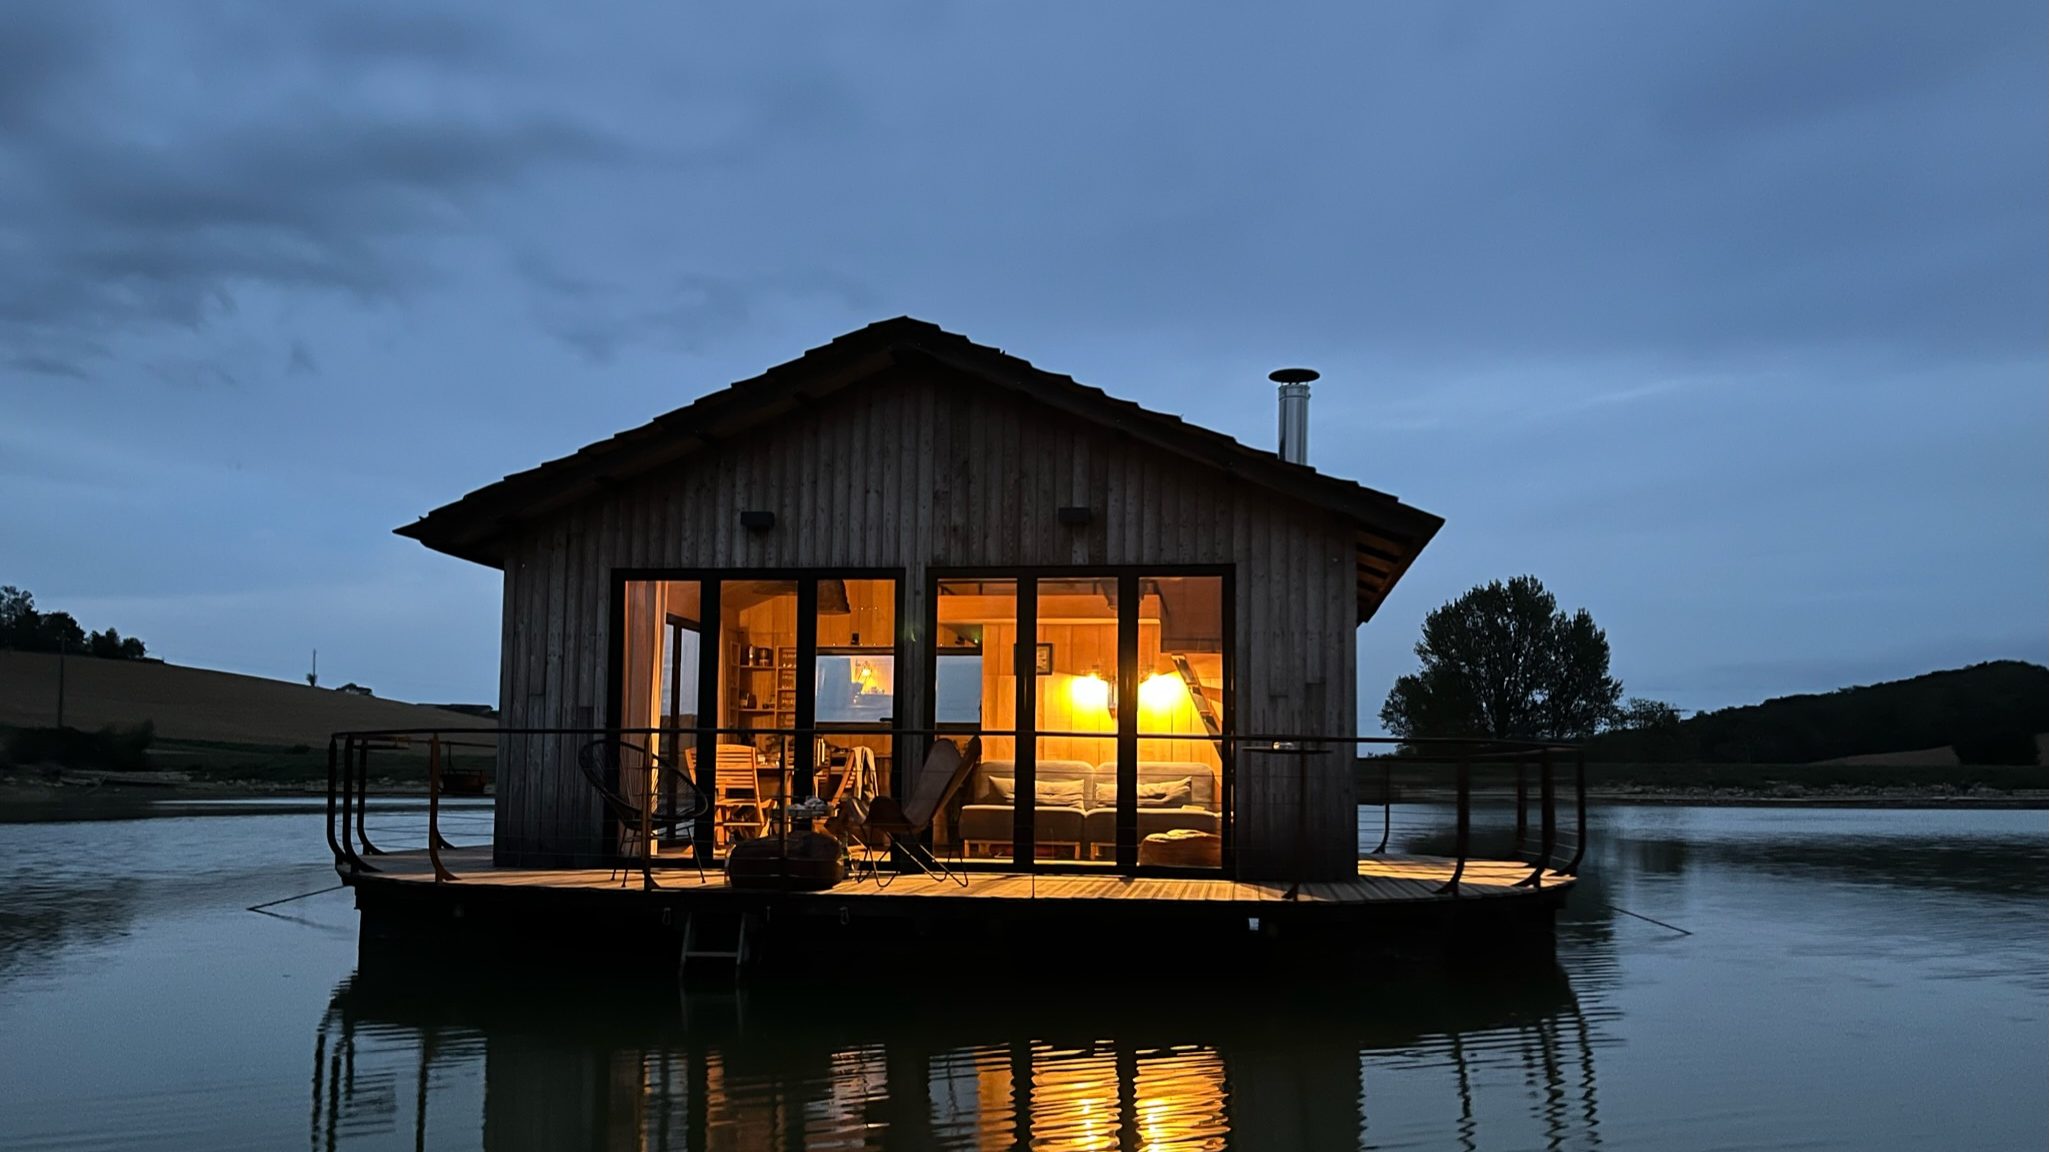 Arrêter le temps dans une maison flottante, au milieu d’un lac du Gers